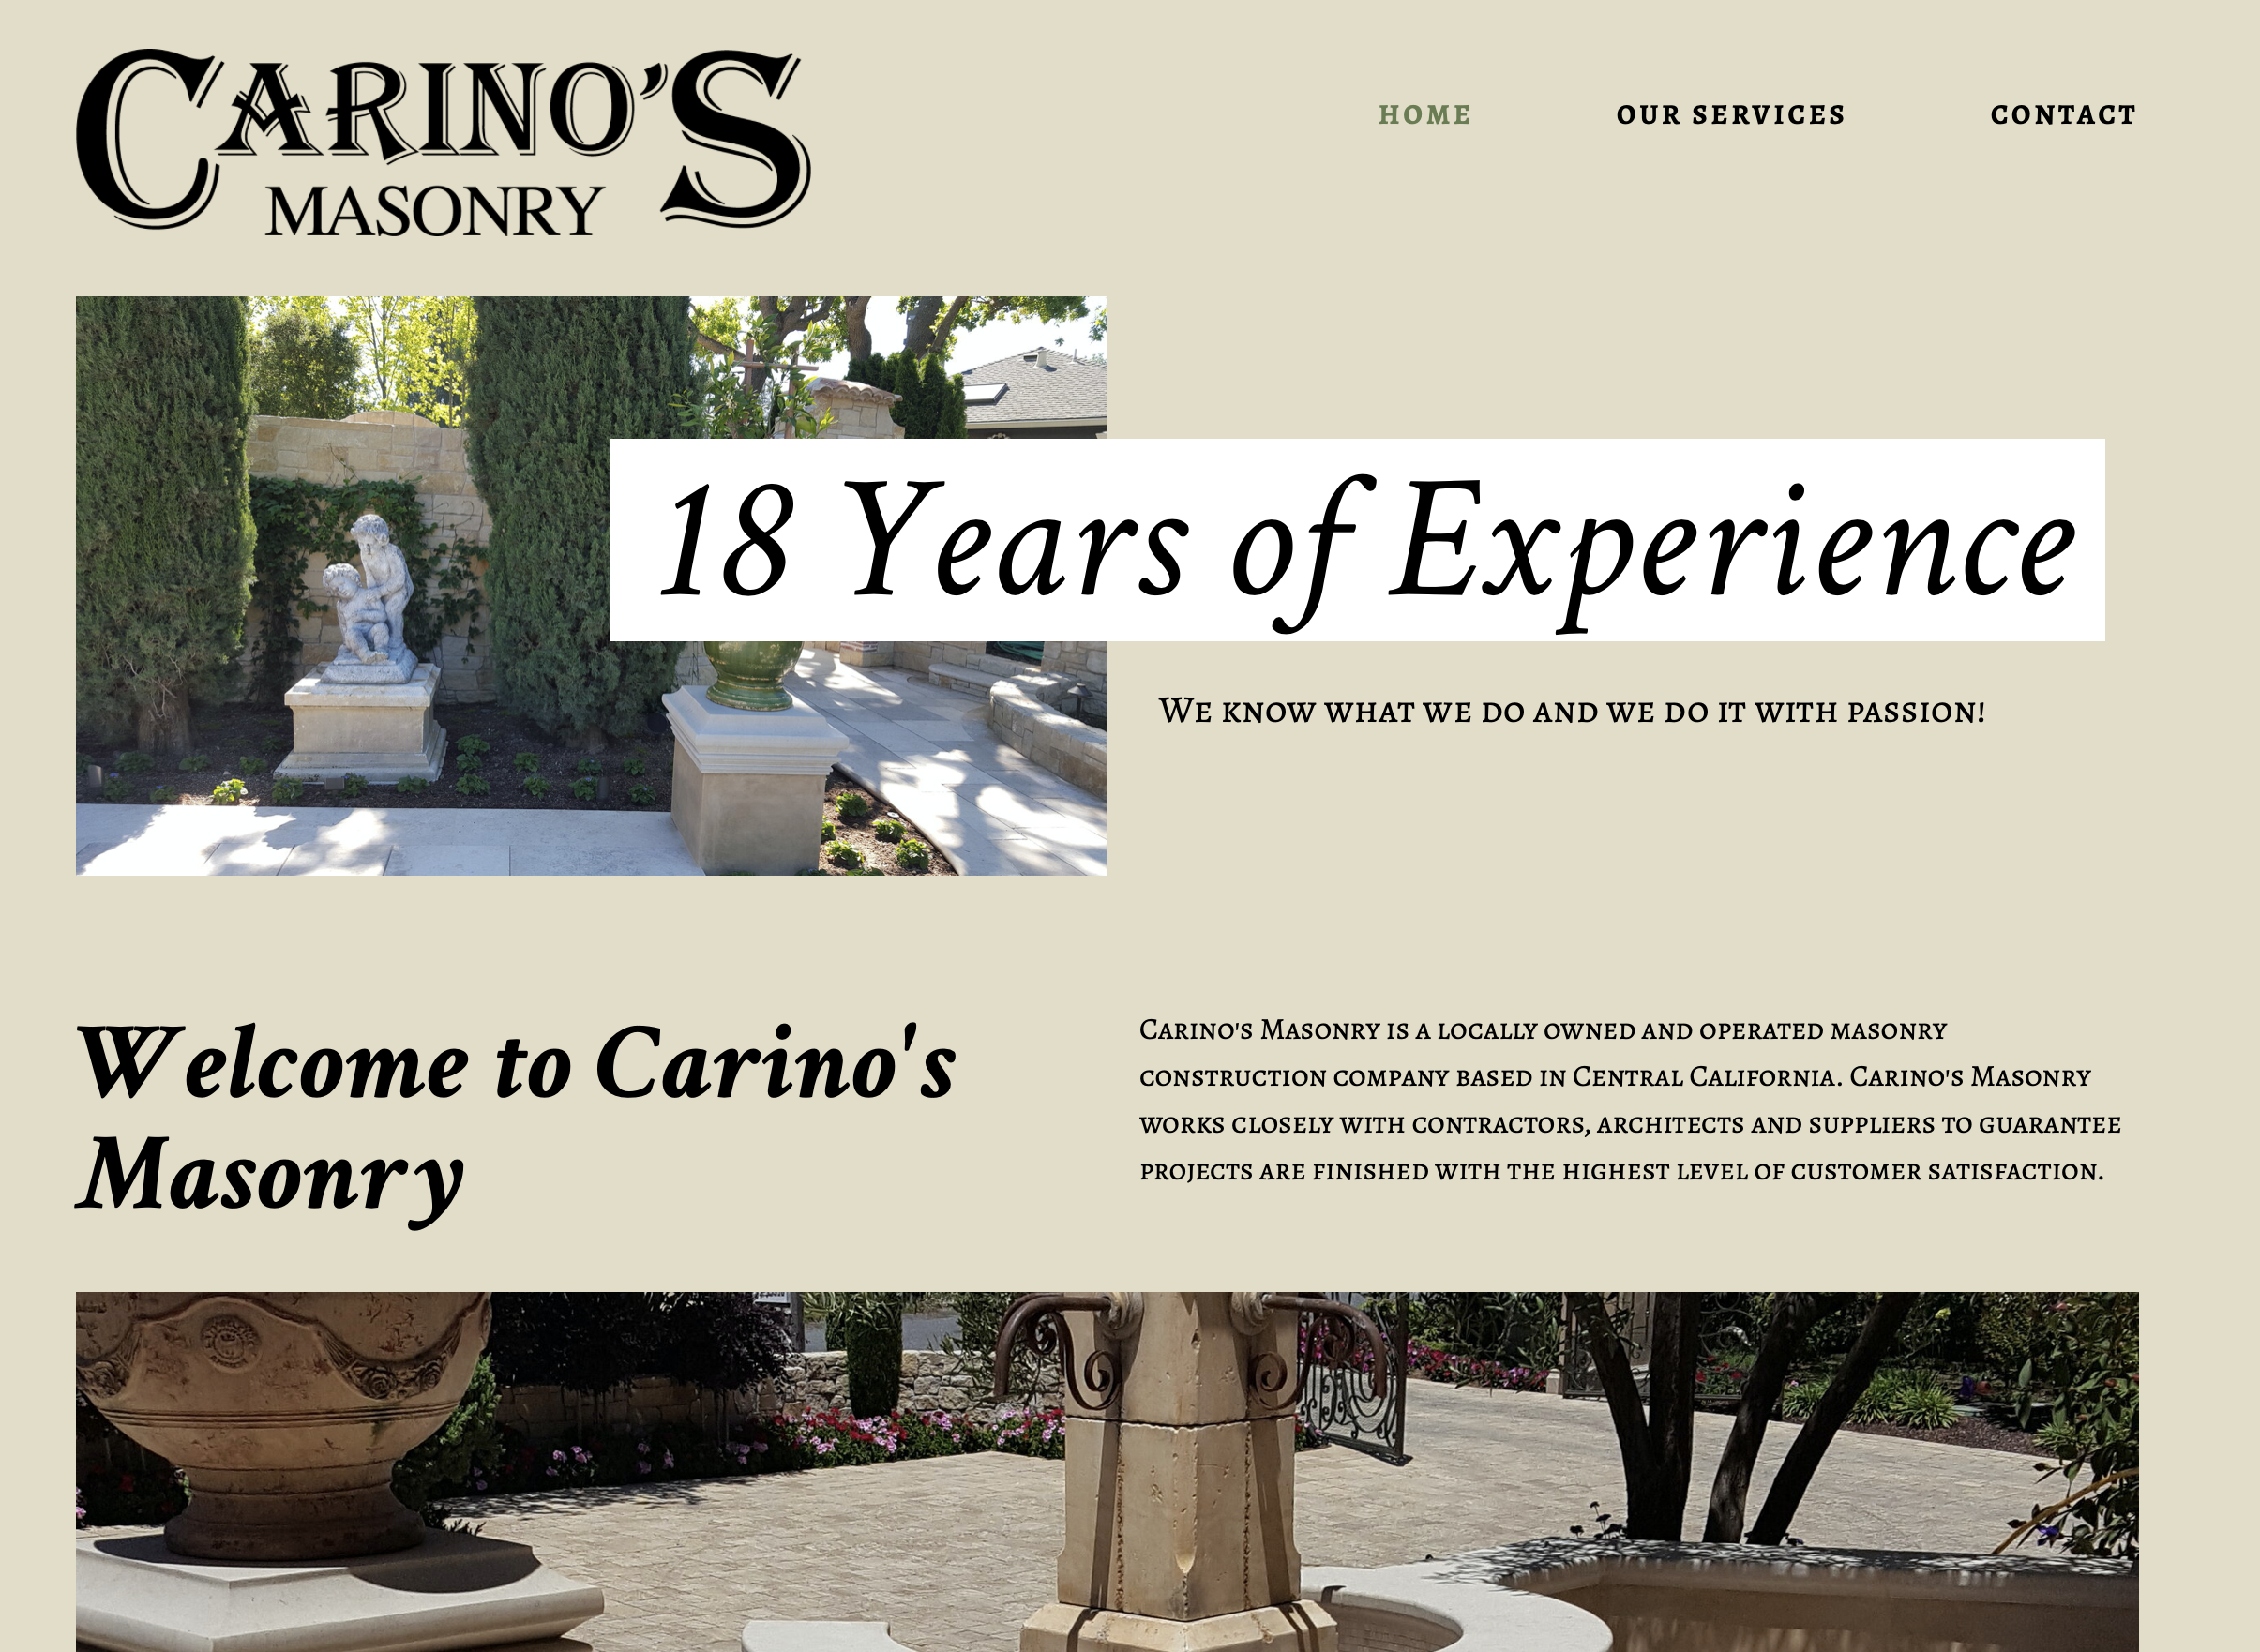 Carino's Masonry